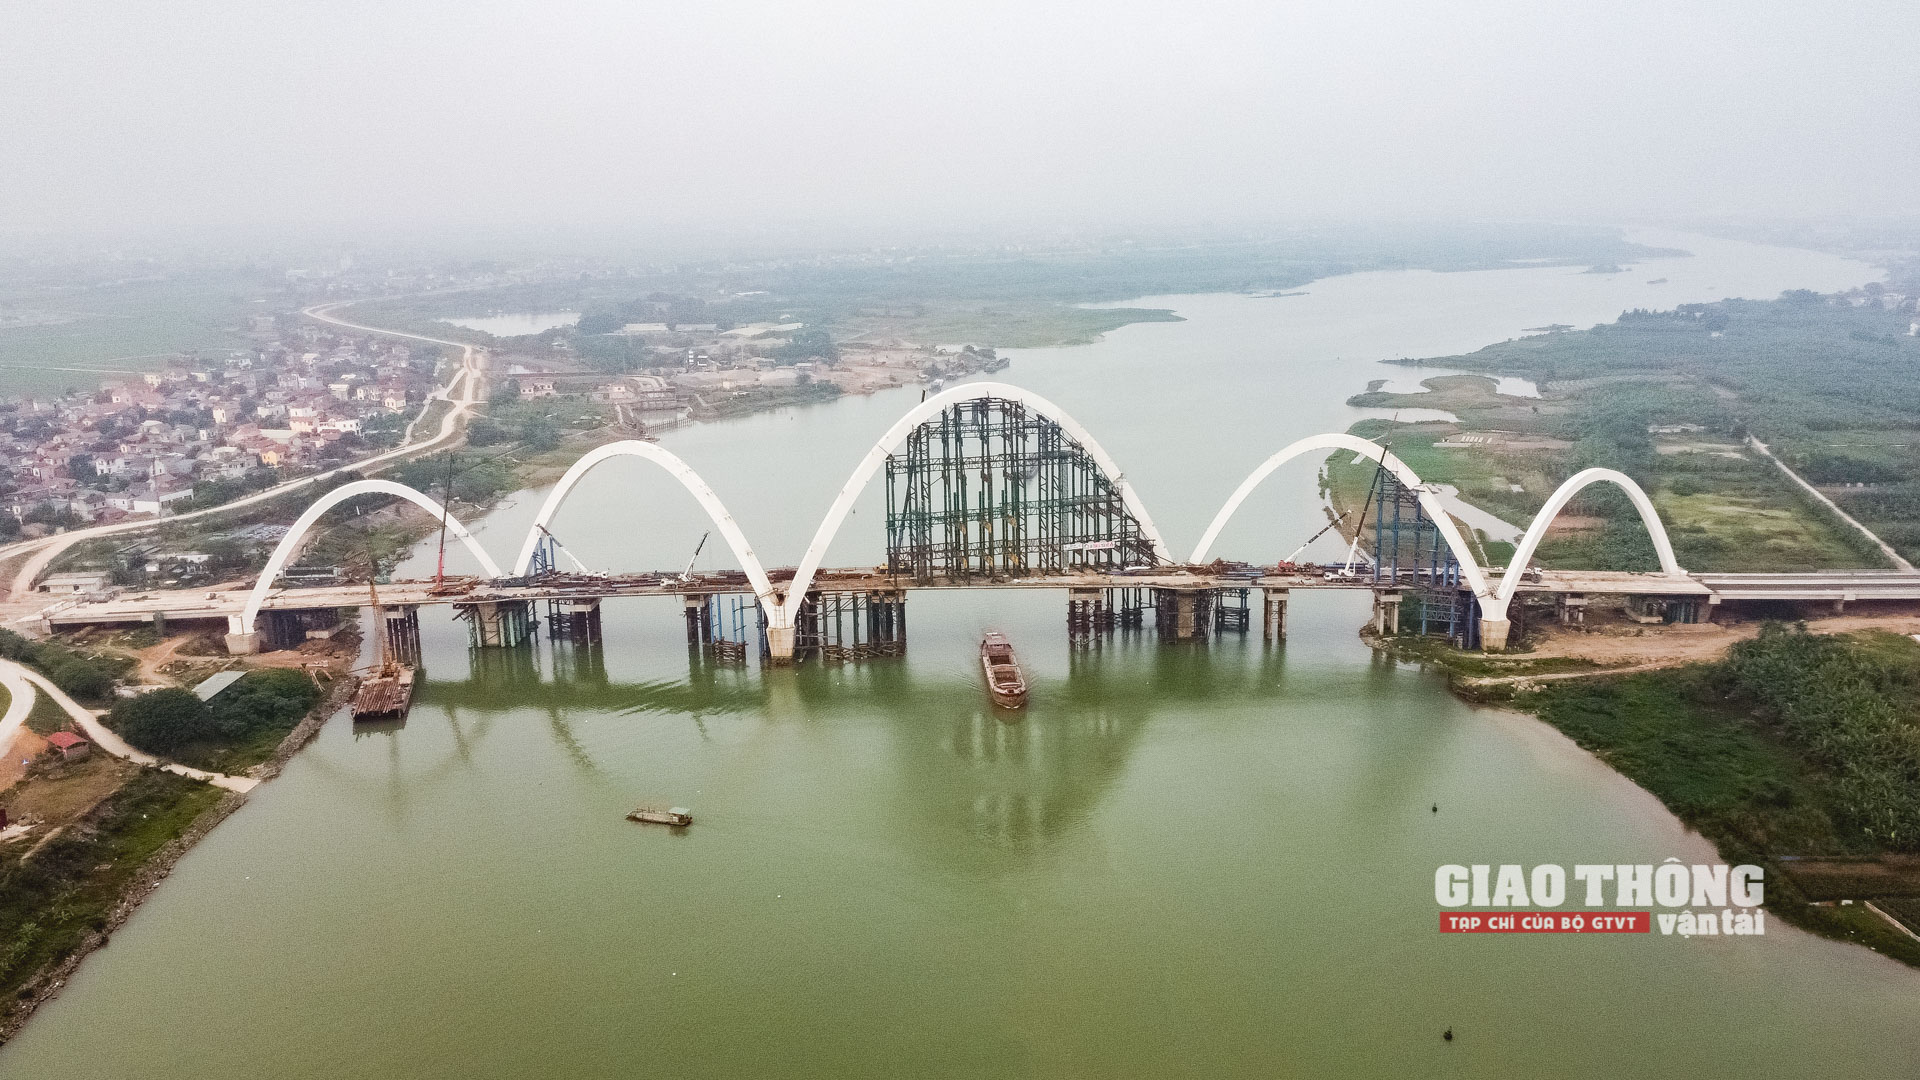 Phóng sự ảnh: Mục sở thị cầu vòm thép cao nhất Việt Nam chuẩn bị khánh thành - Ảnh 26.